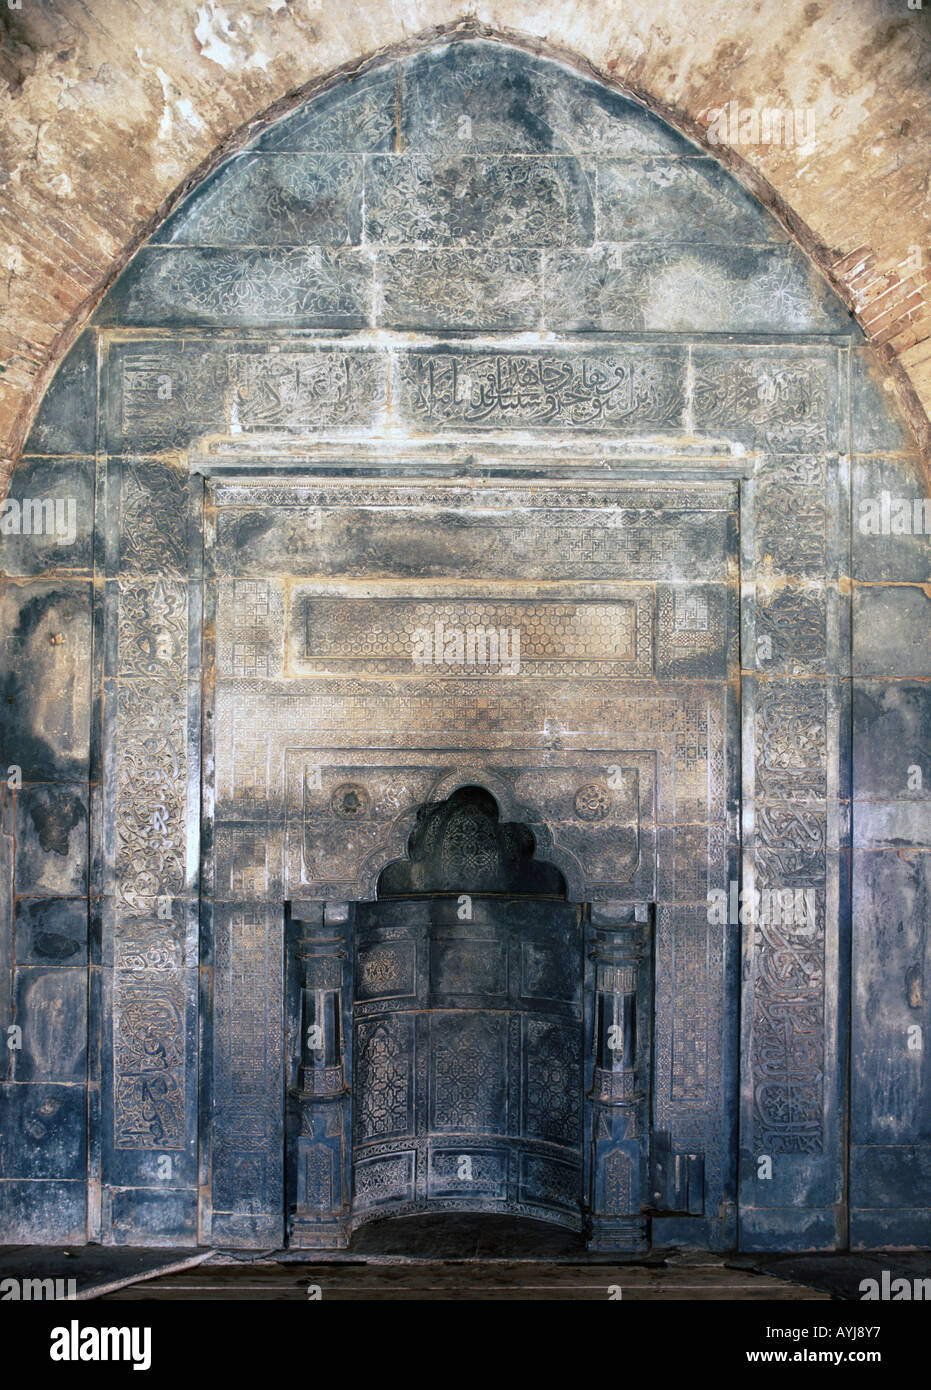 Adina mosque, Pandua, West Bengal, India Stock Photo